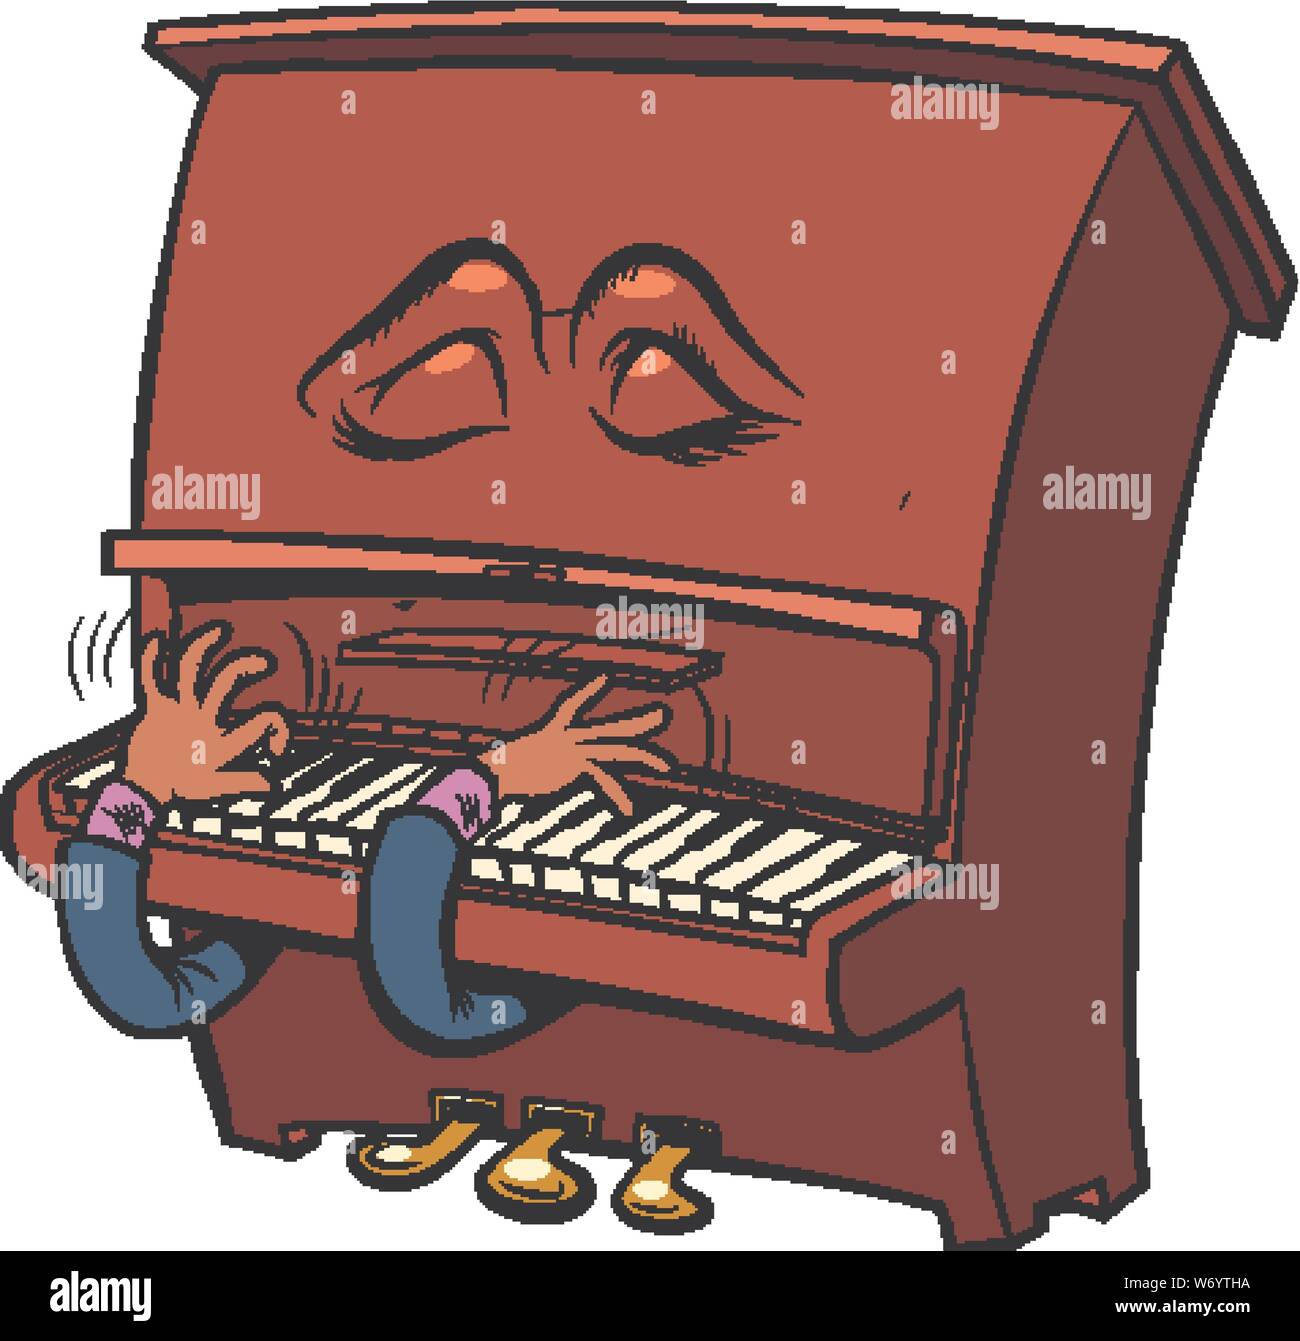 Romantique triste caractère Emoji émotion piano instrument de musique. Retro pop art dessin illustration vectorielle Illustration de Vecteur